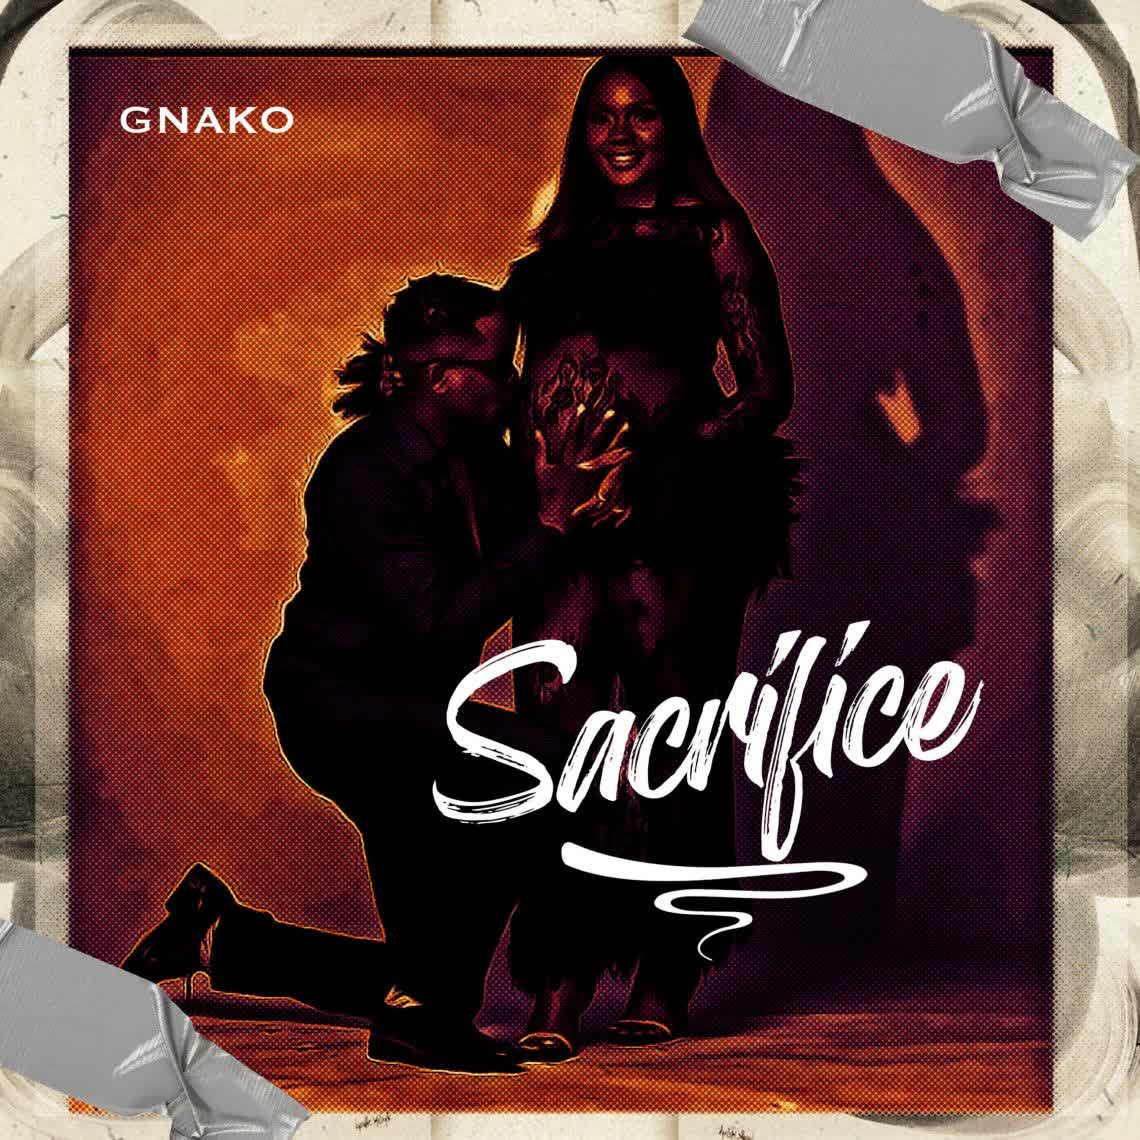  G Nako – Sacrifice